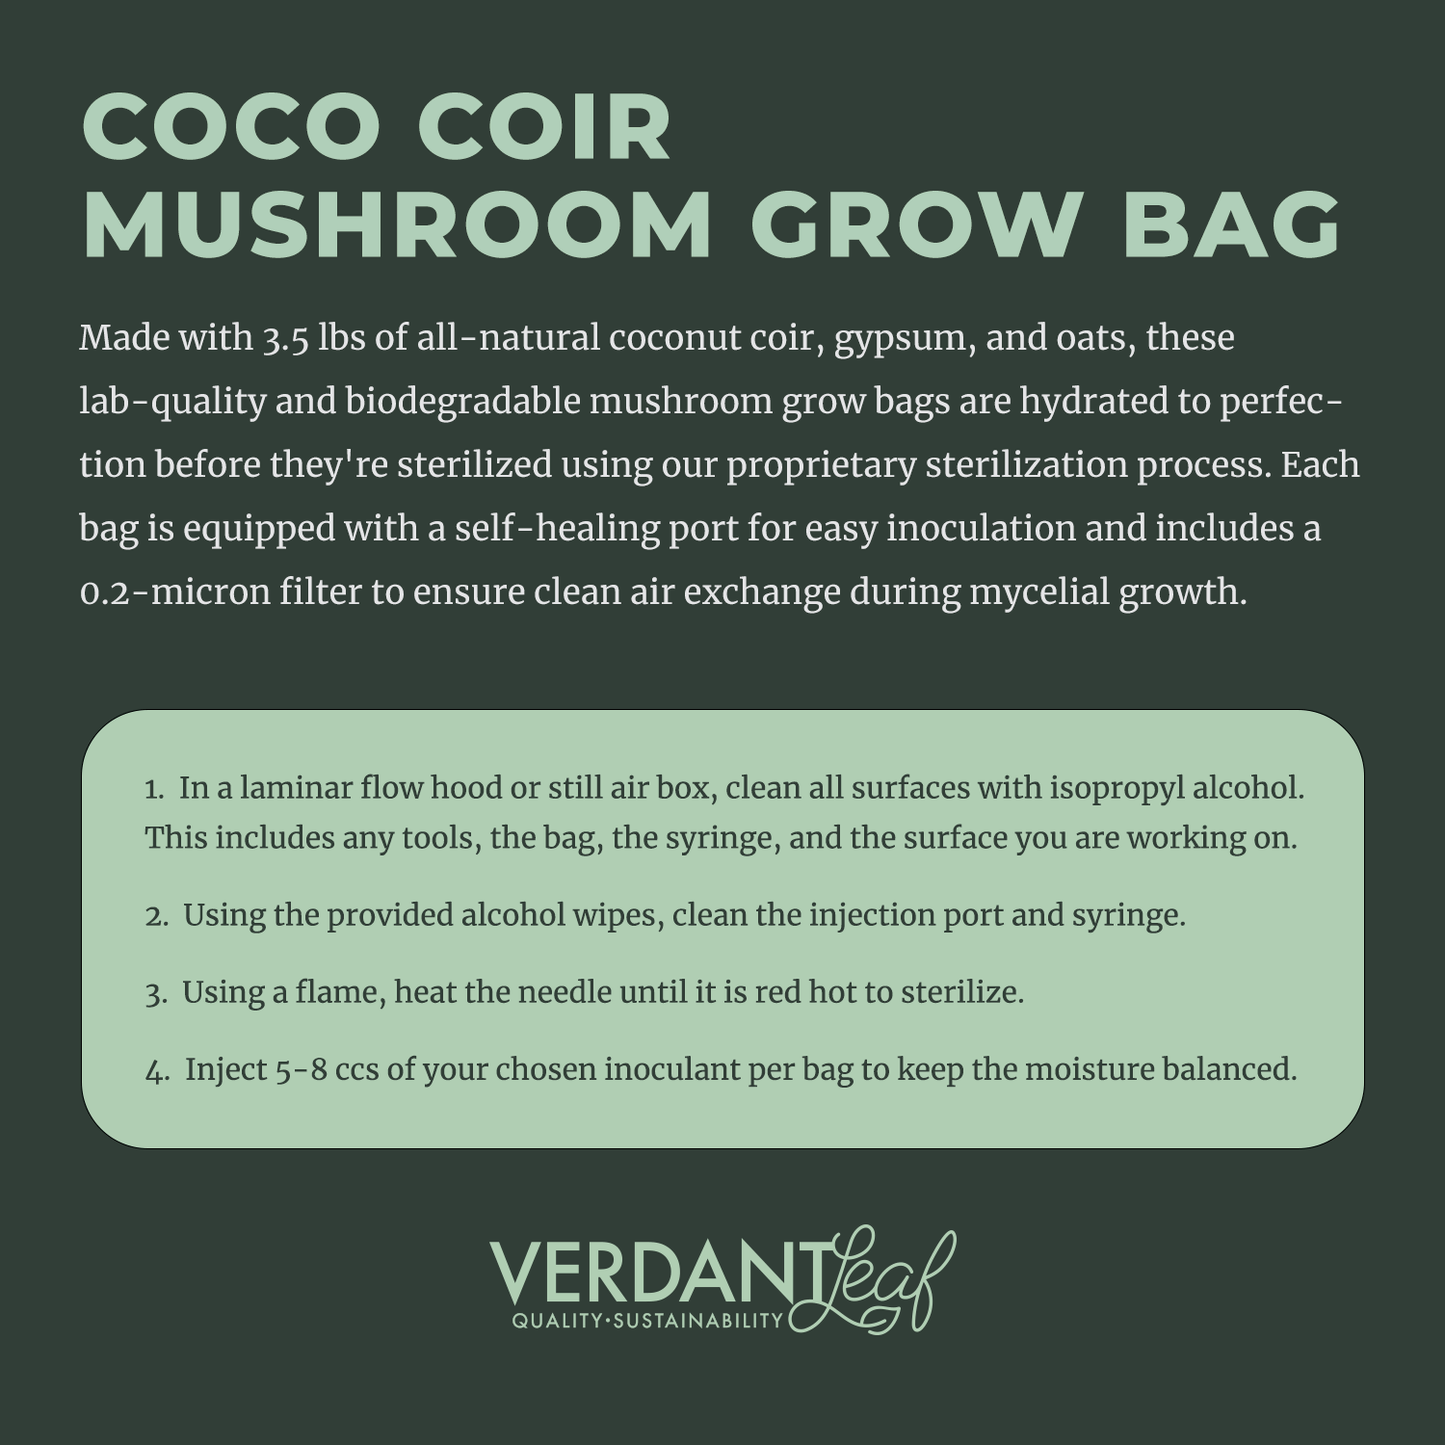 Coco Coir Mushroom Grow Bags